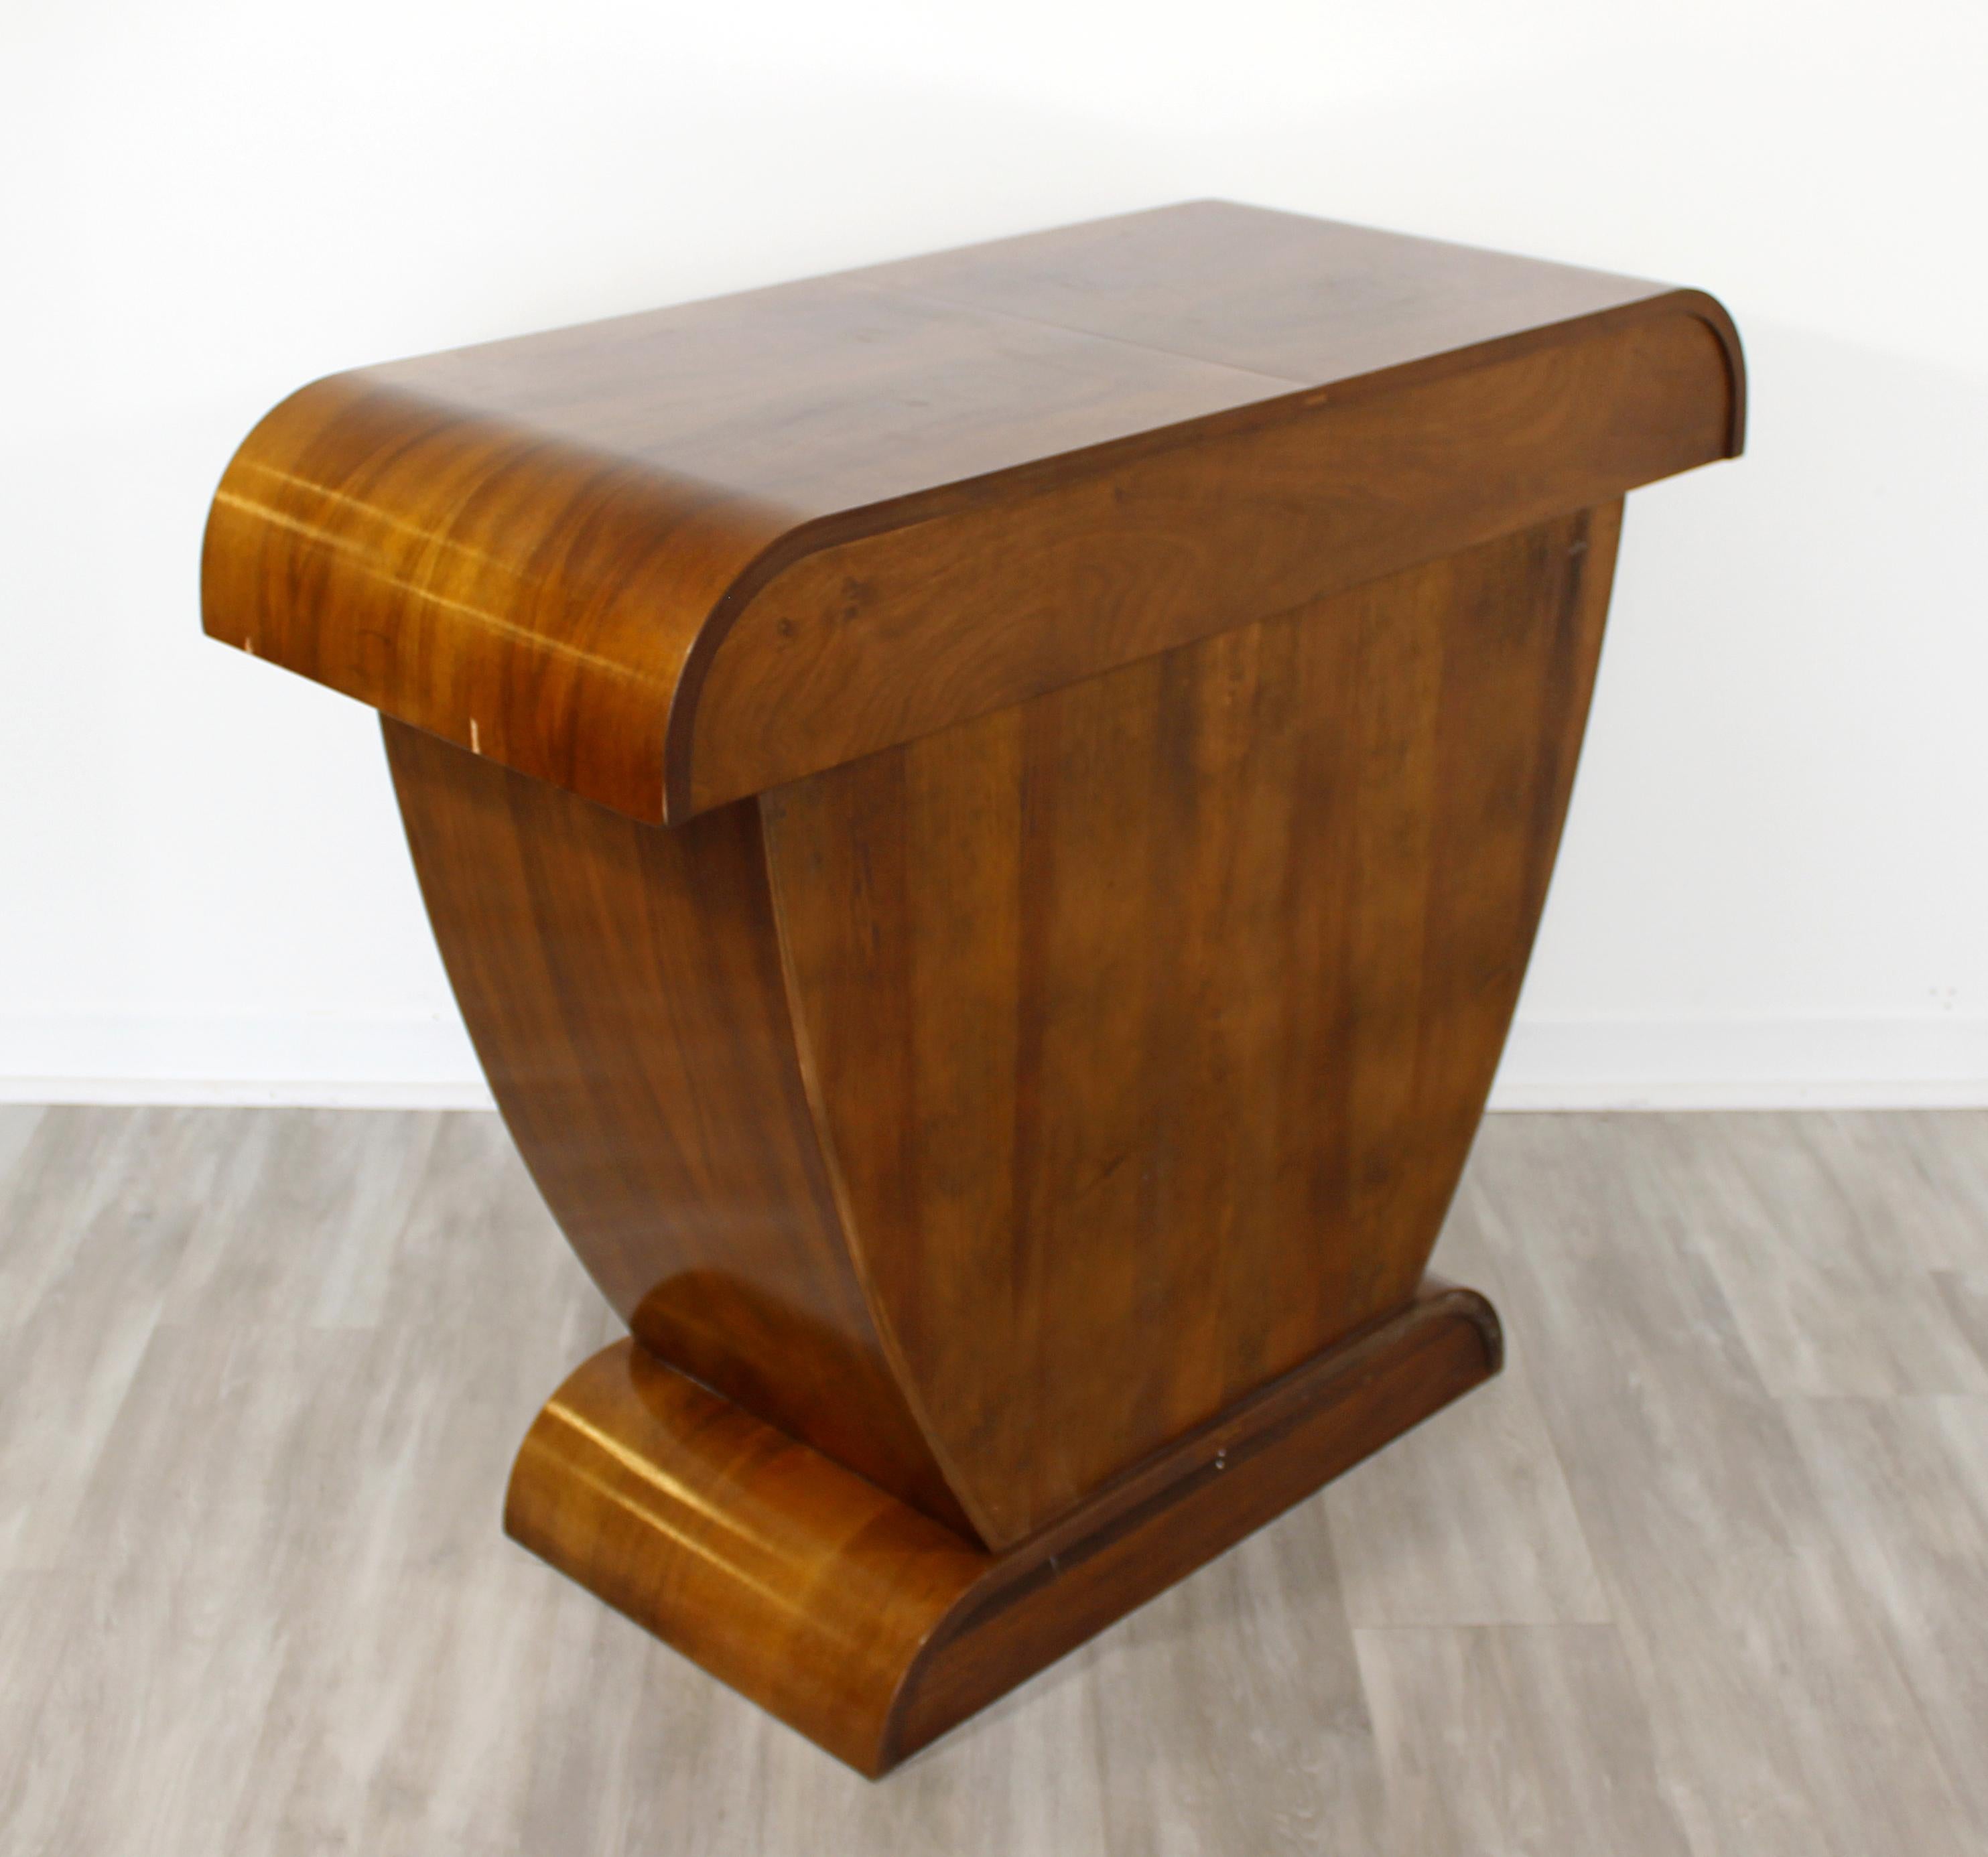 Art Deco Style De Bournais Sculptural Custom Cherrywood Console Cabinet Table 1